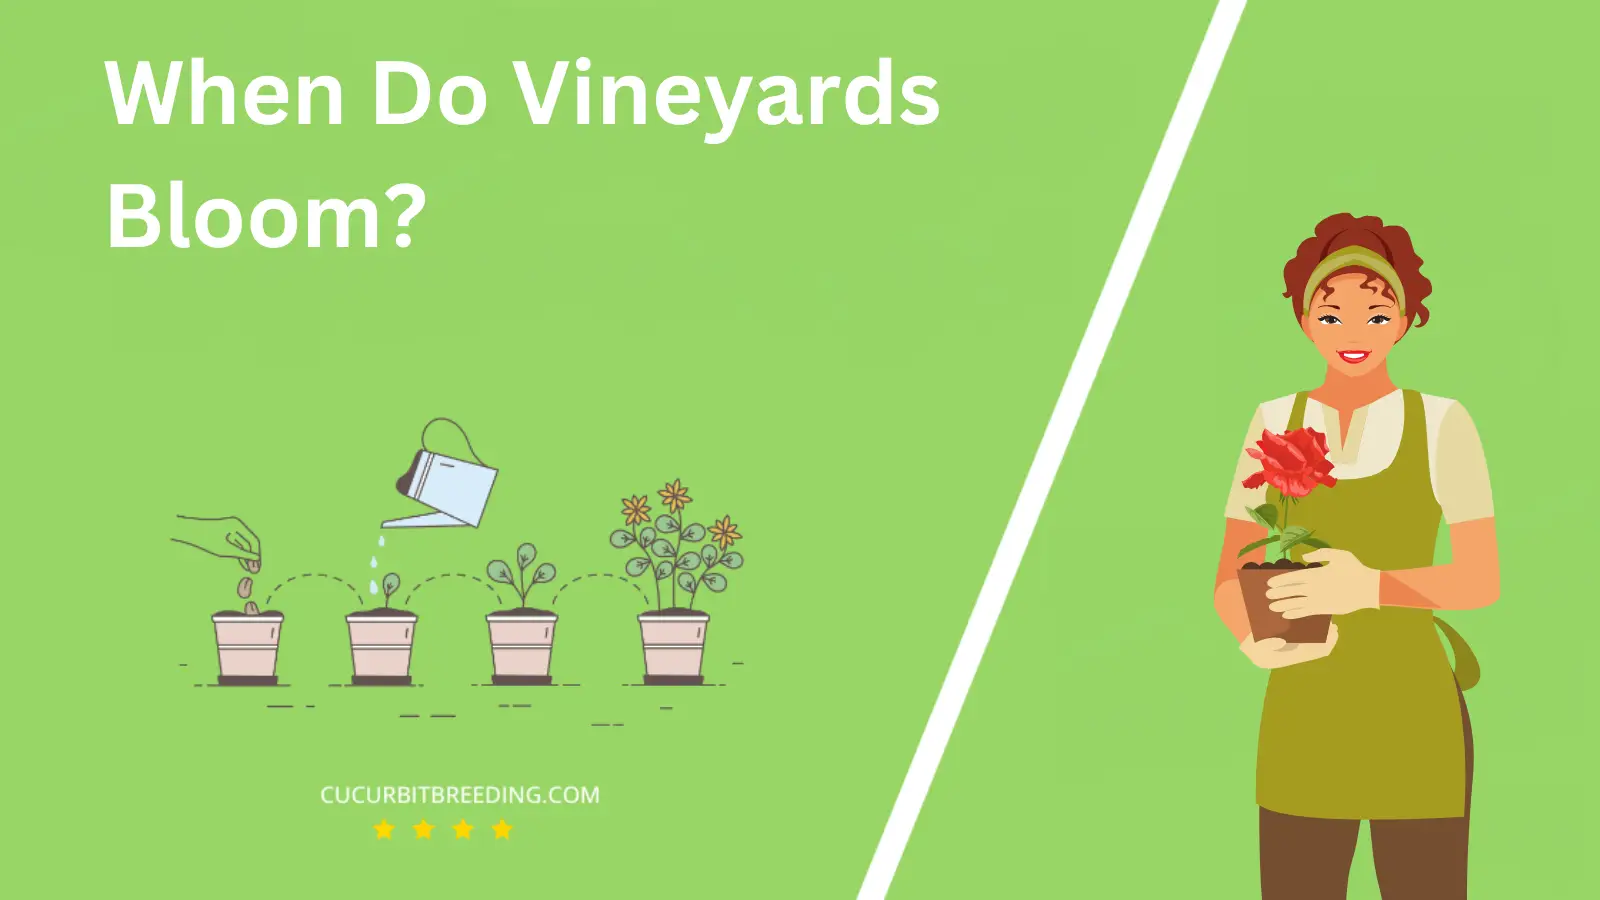 When Do Vineyards Bloom?